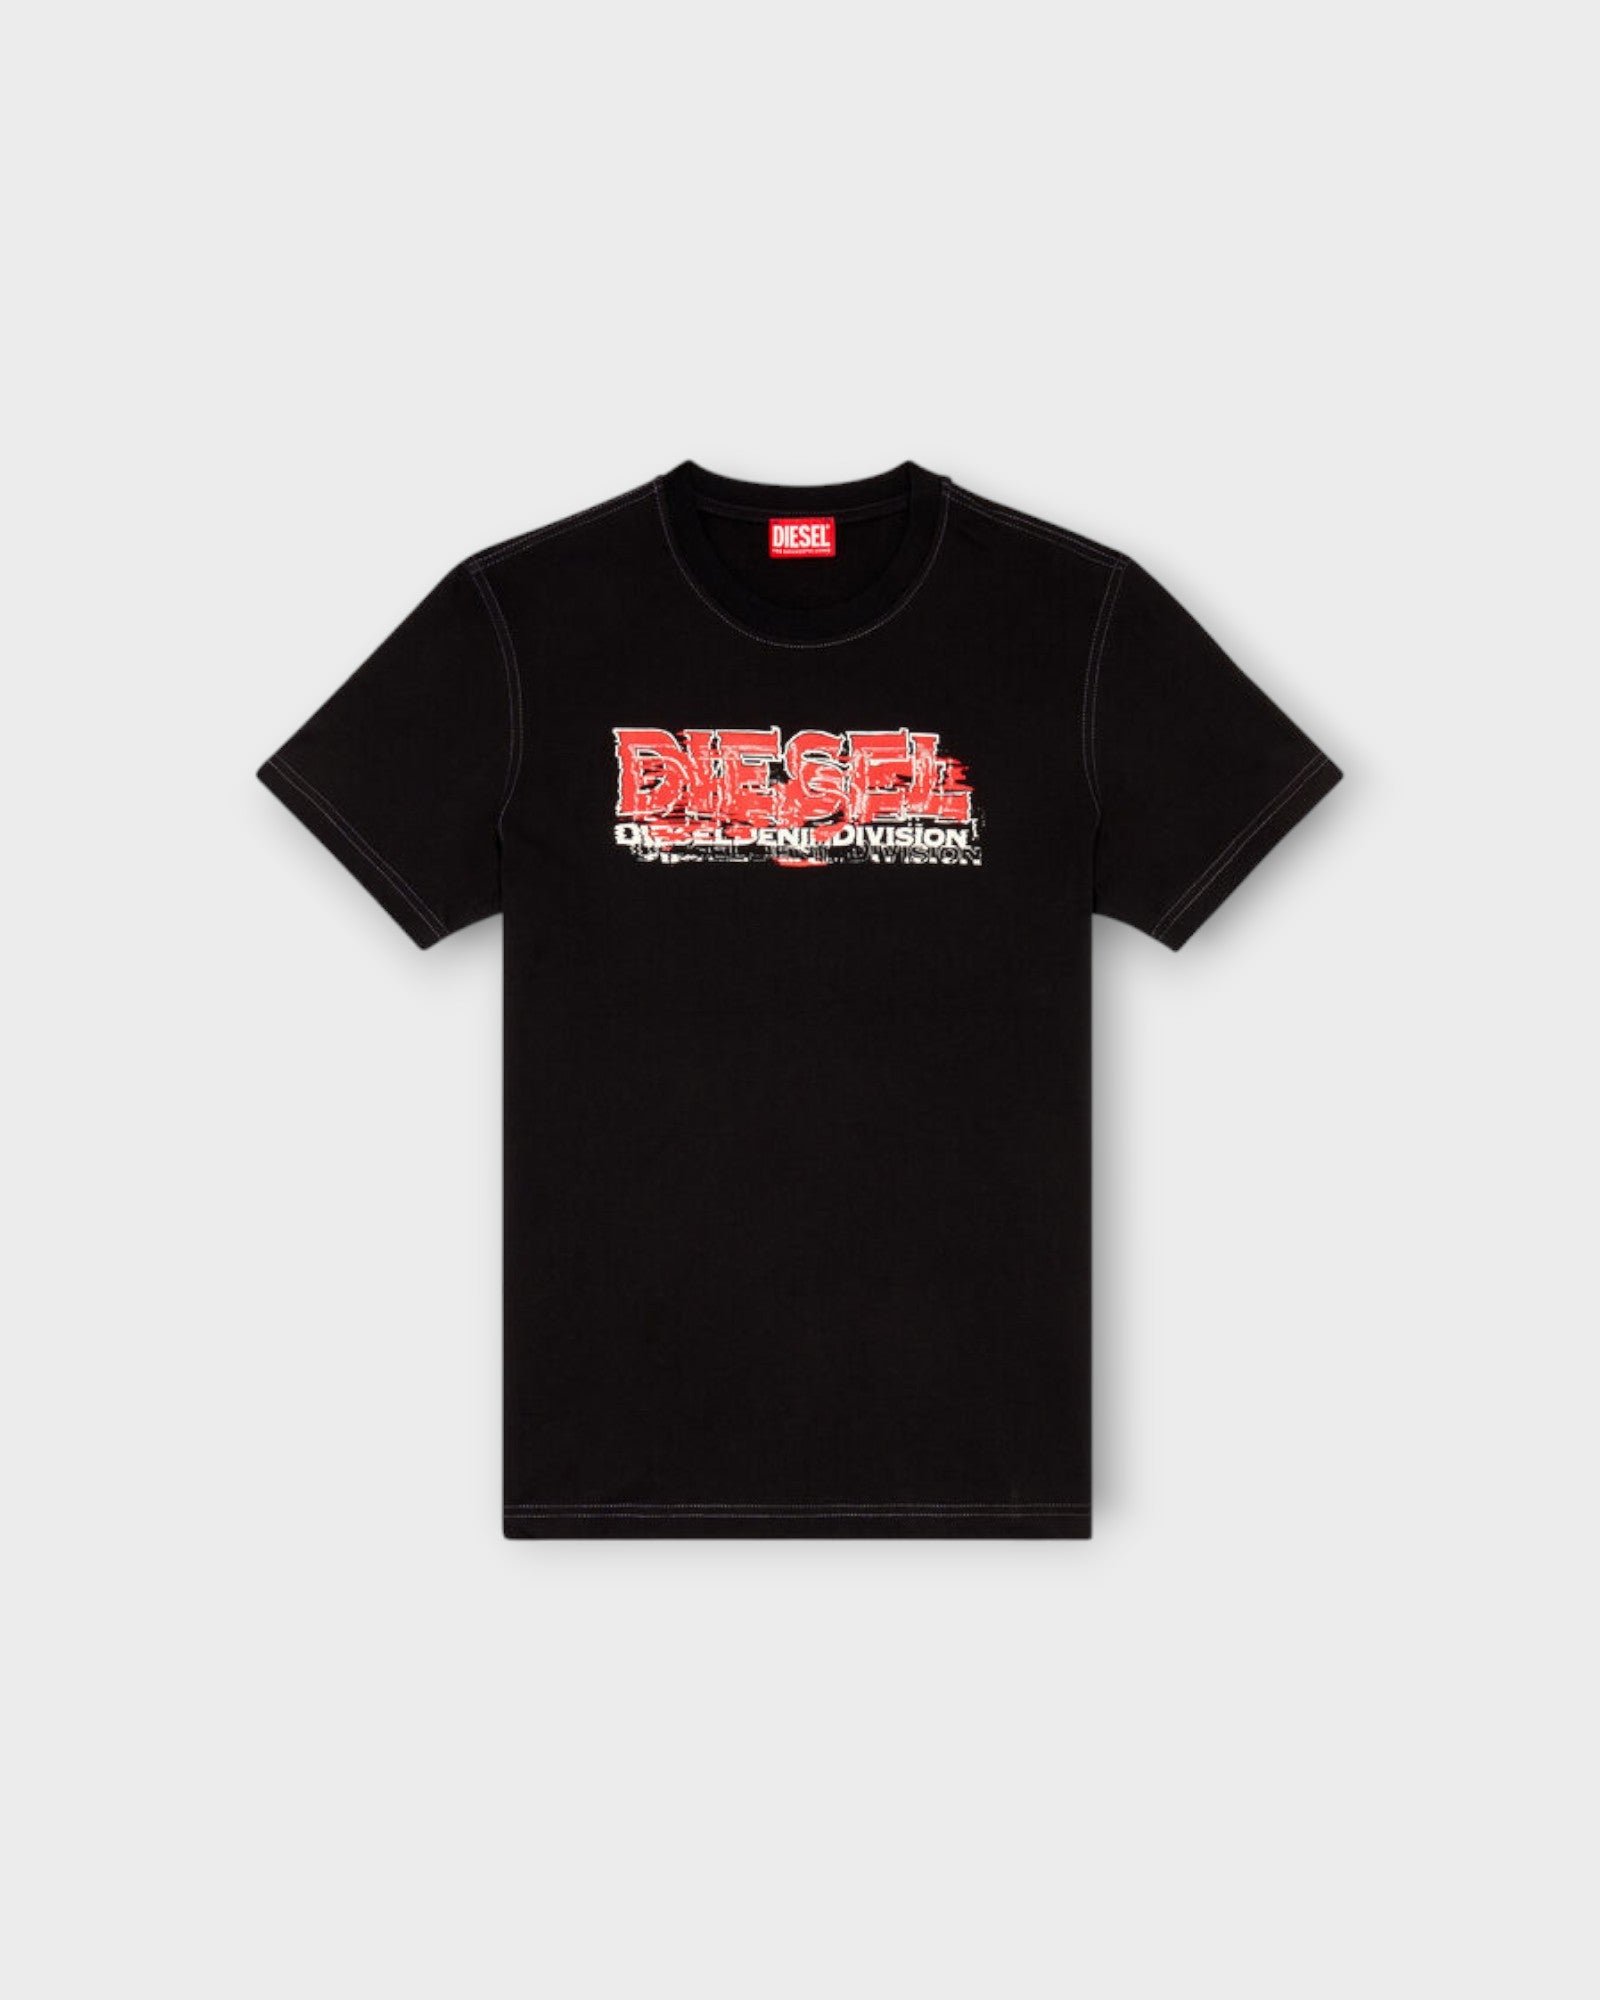 Diegor Tee Black - Sort Printet Diesel T-shirt til Mænd. Her set forfra.